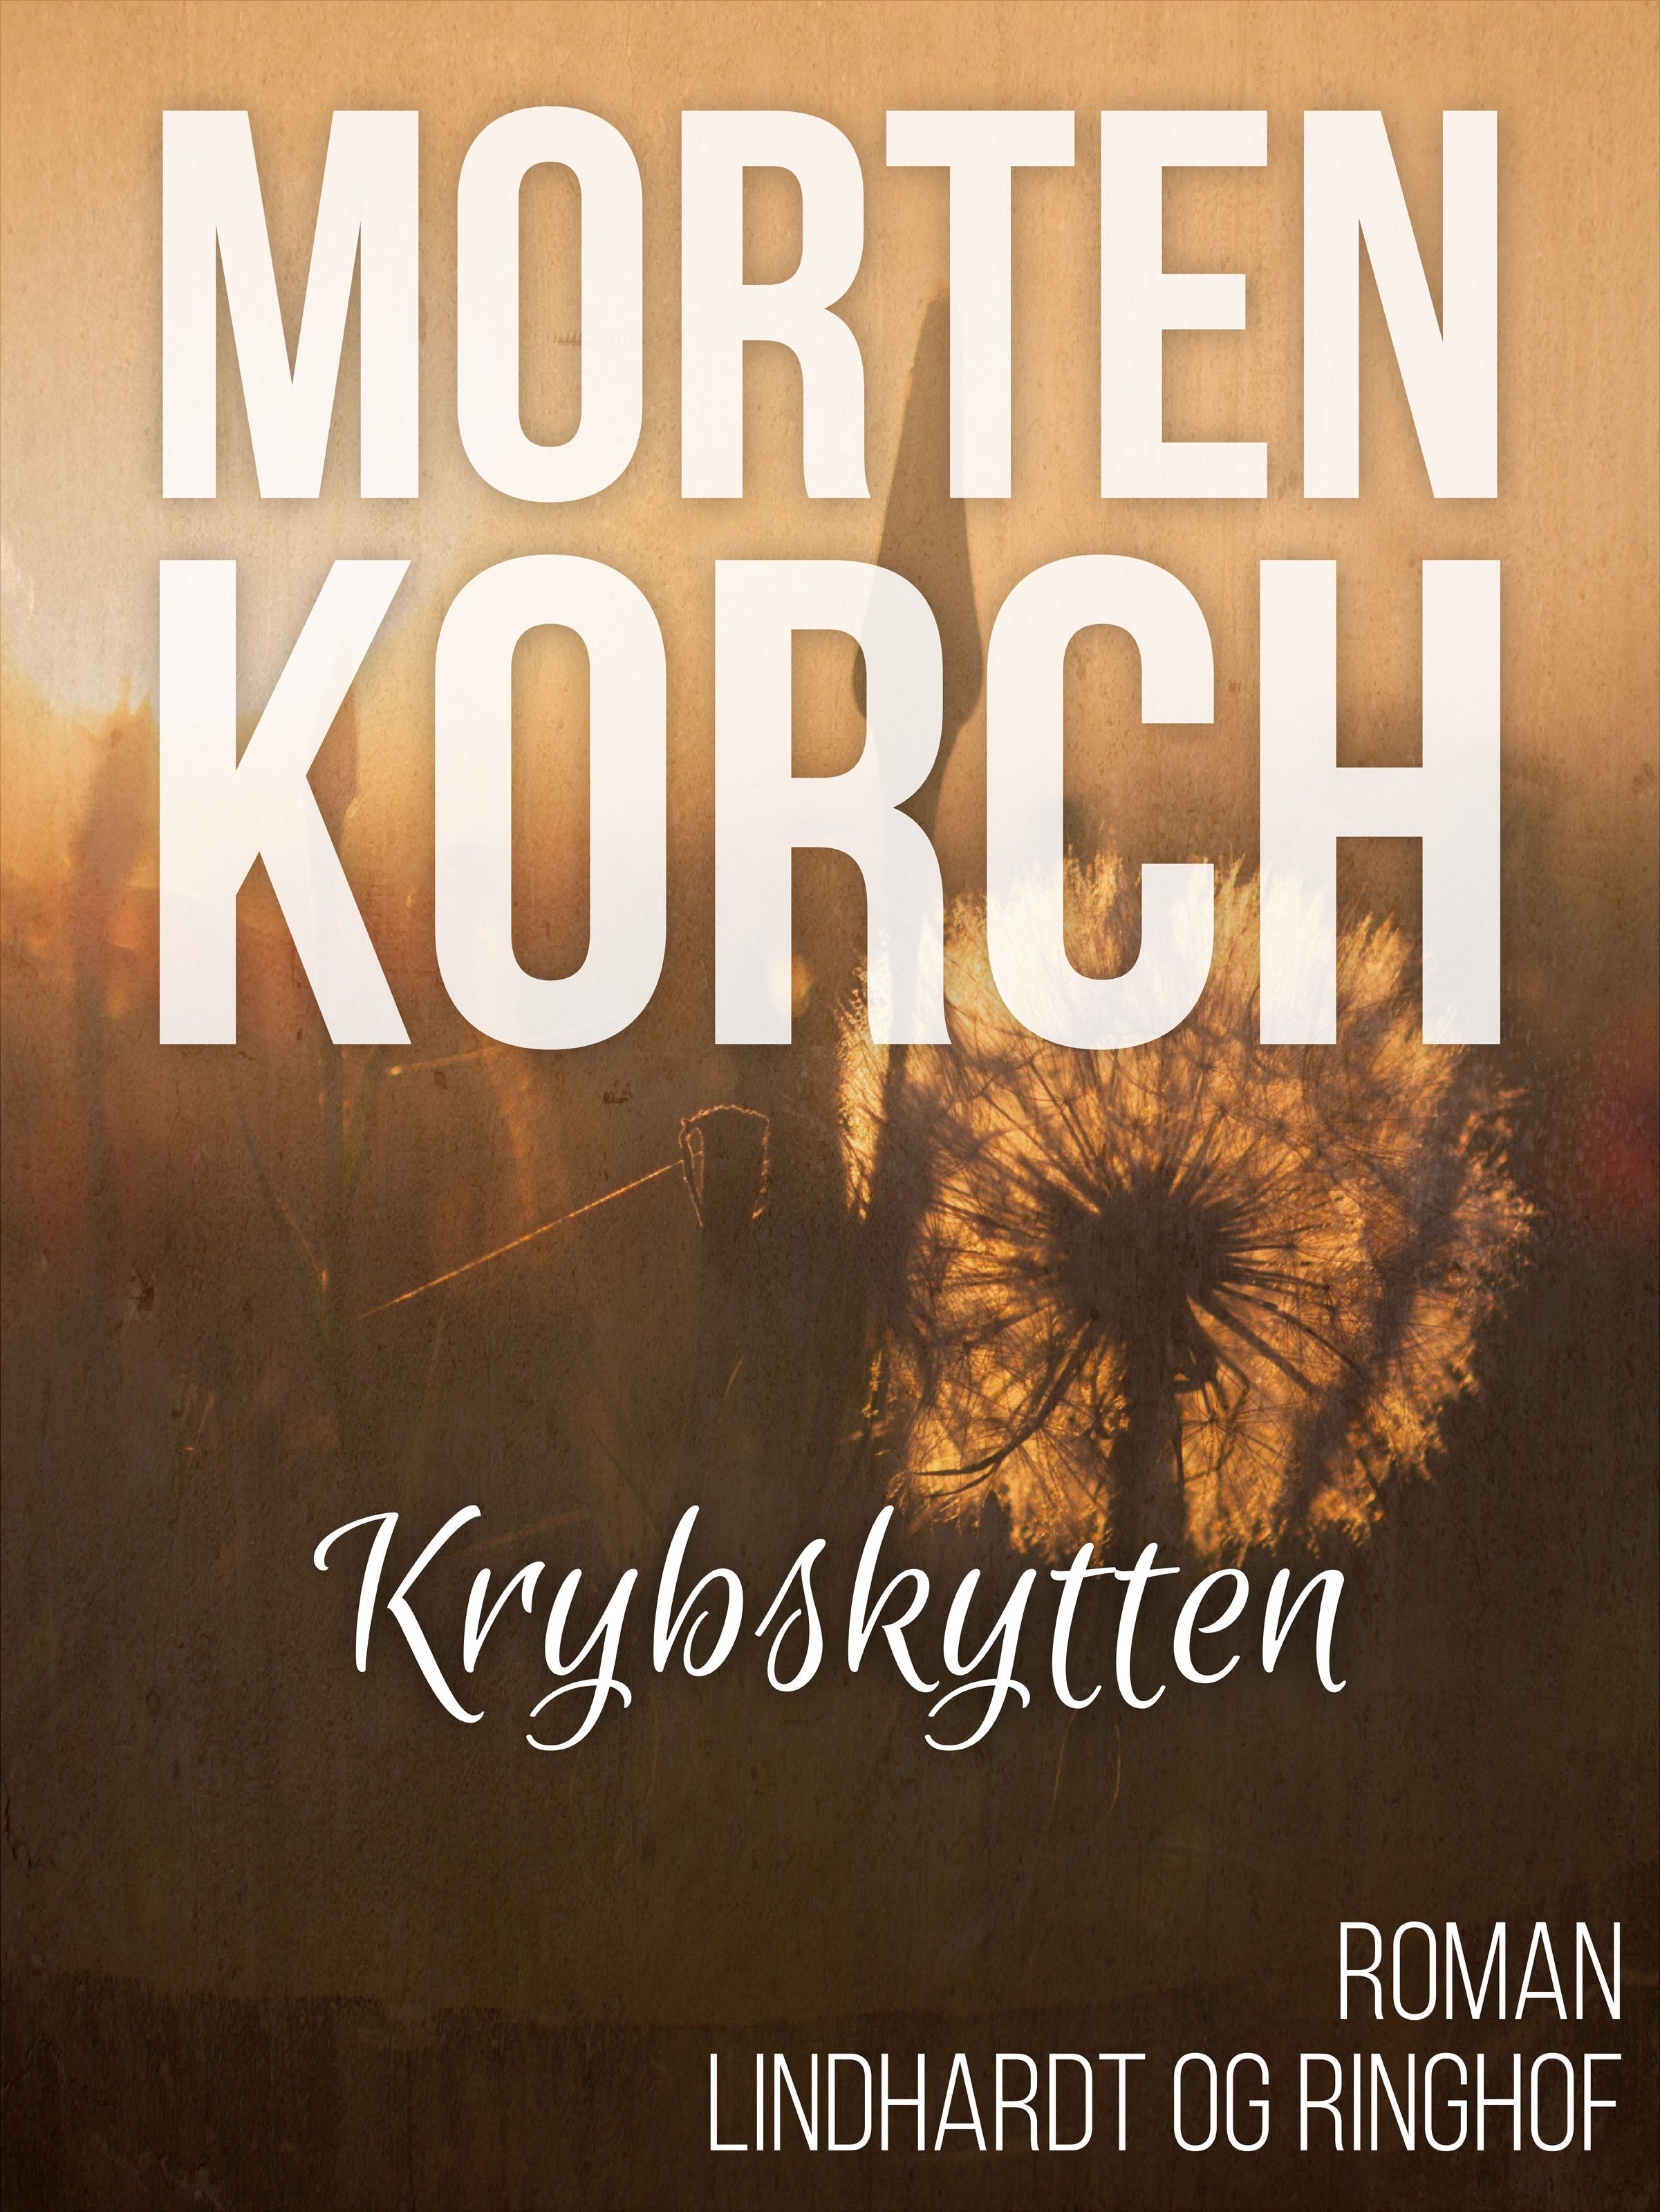 Krybskytten, audiobook by Morten Korch